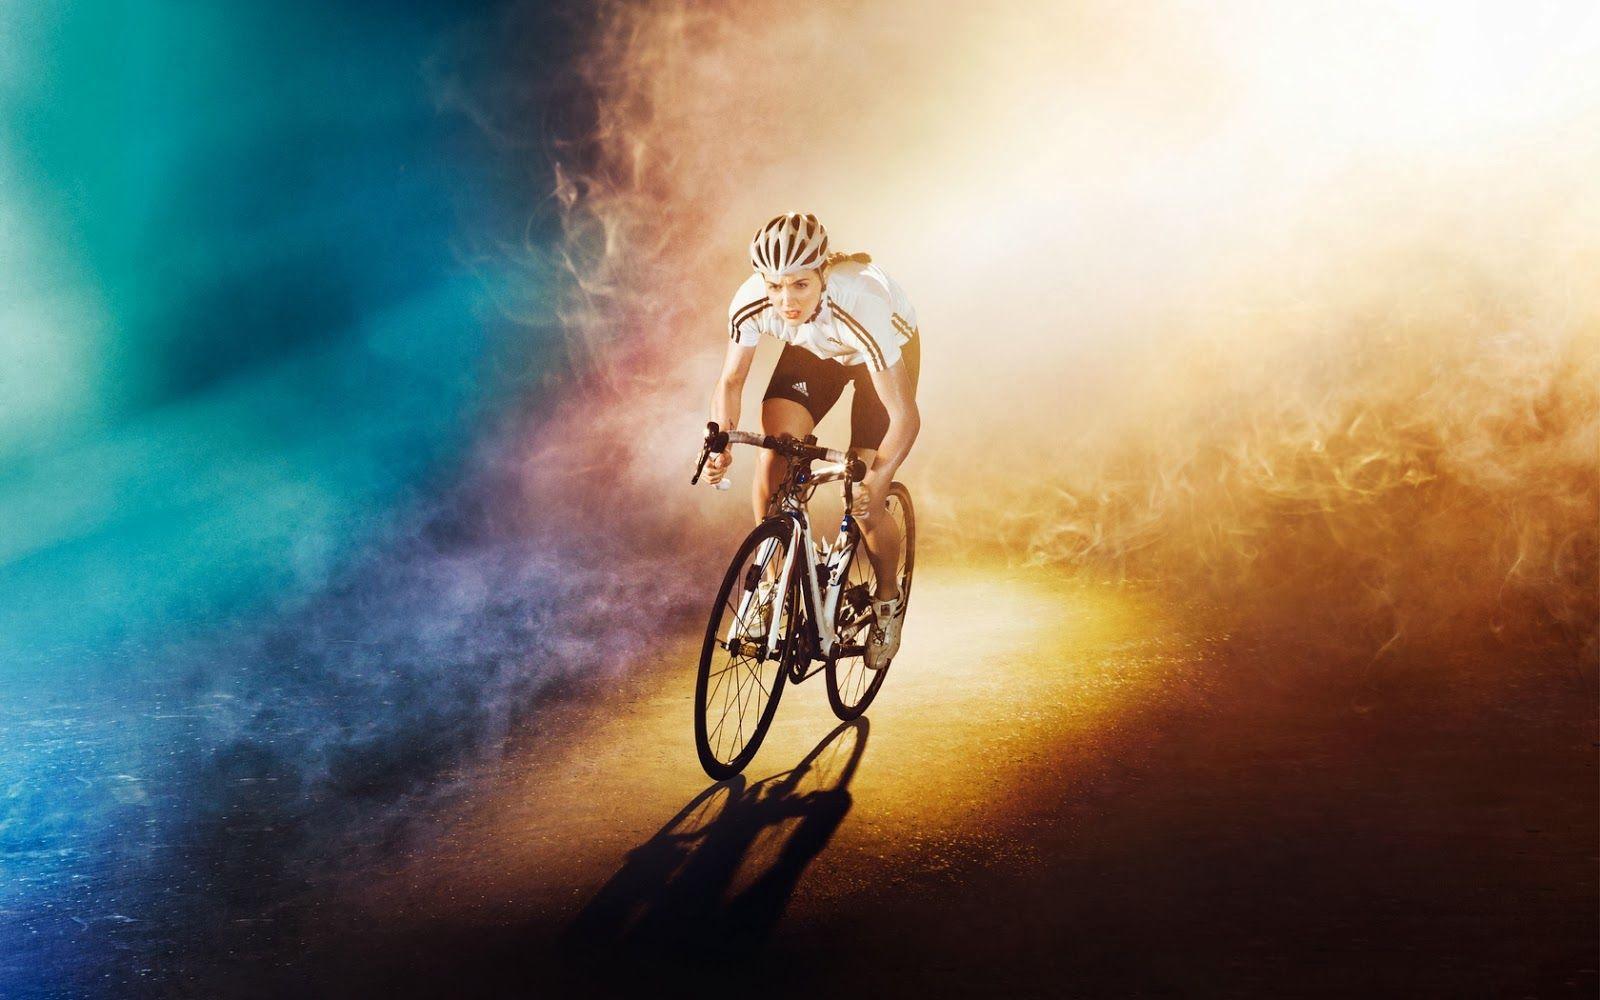 Top Wallpaper 2016: Cycling Wallpaper, Good Cycling Image